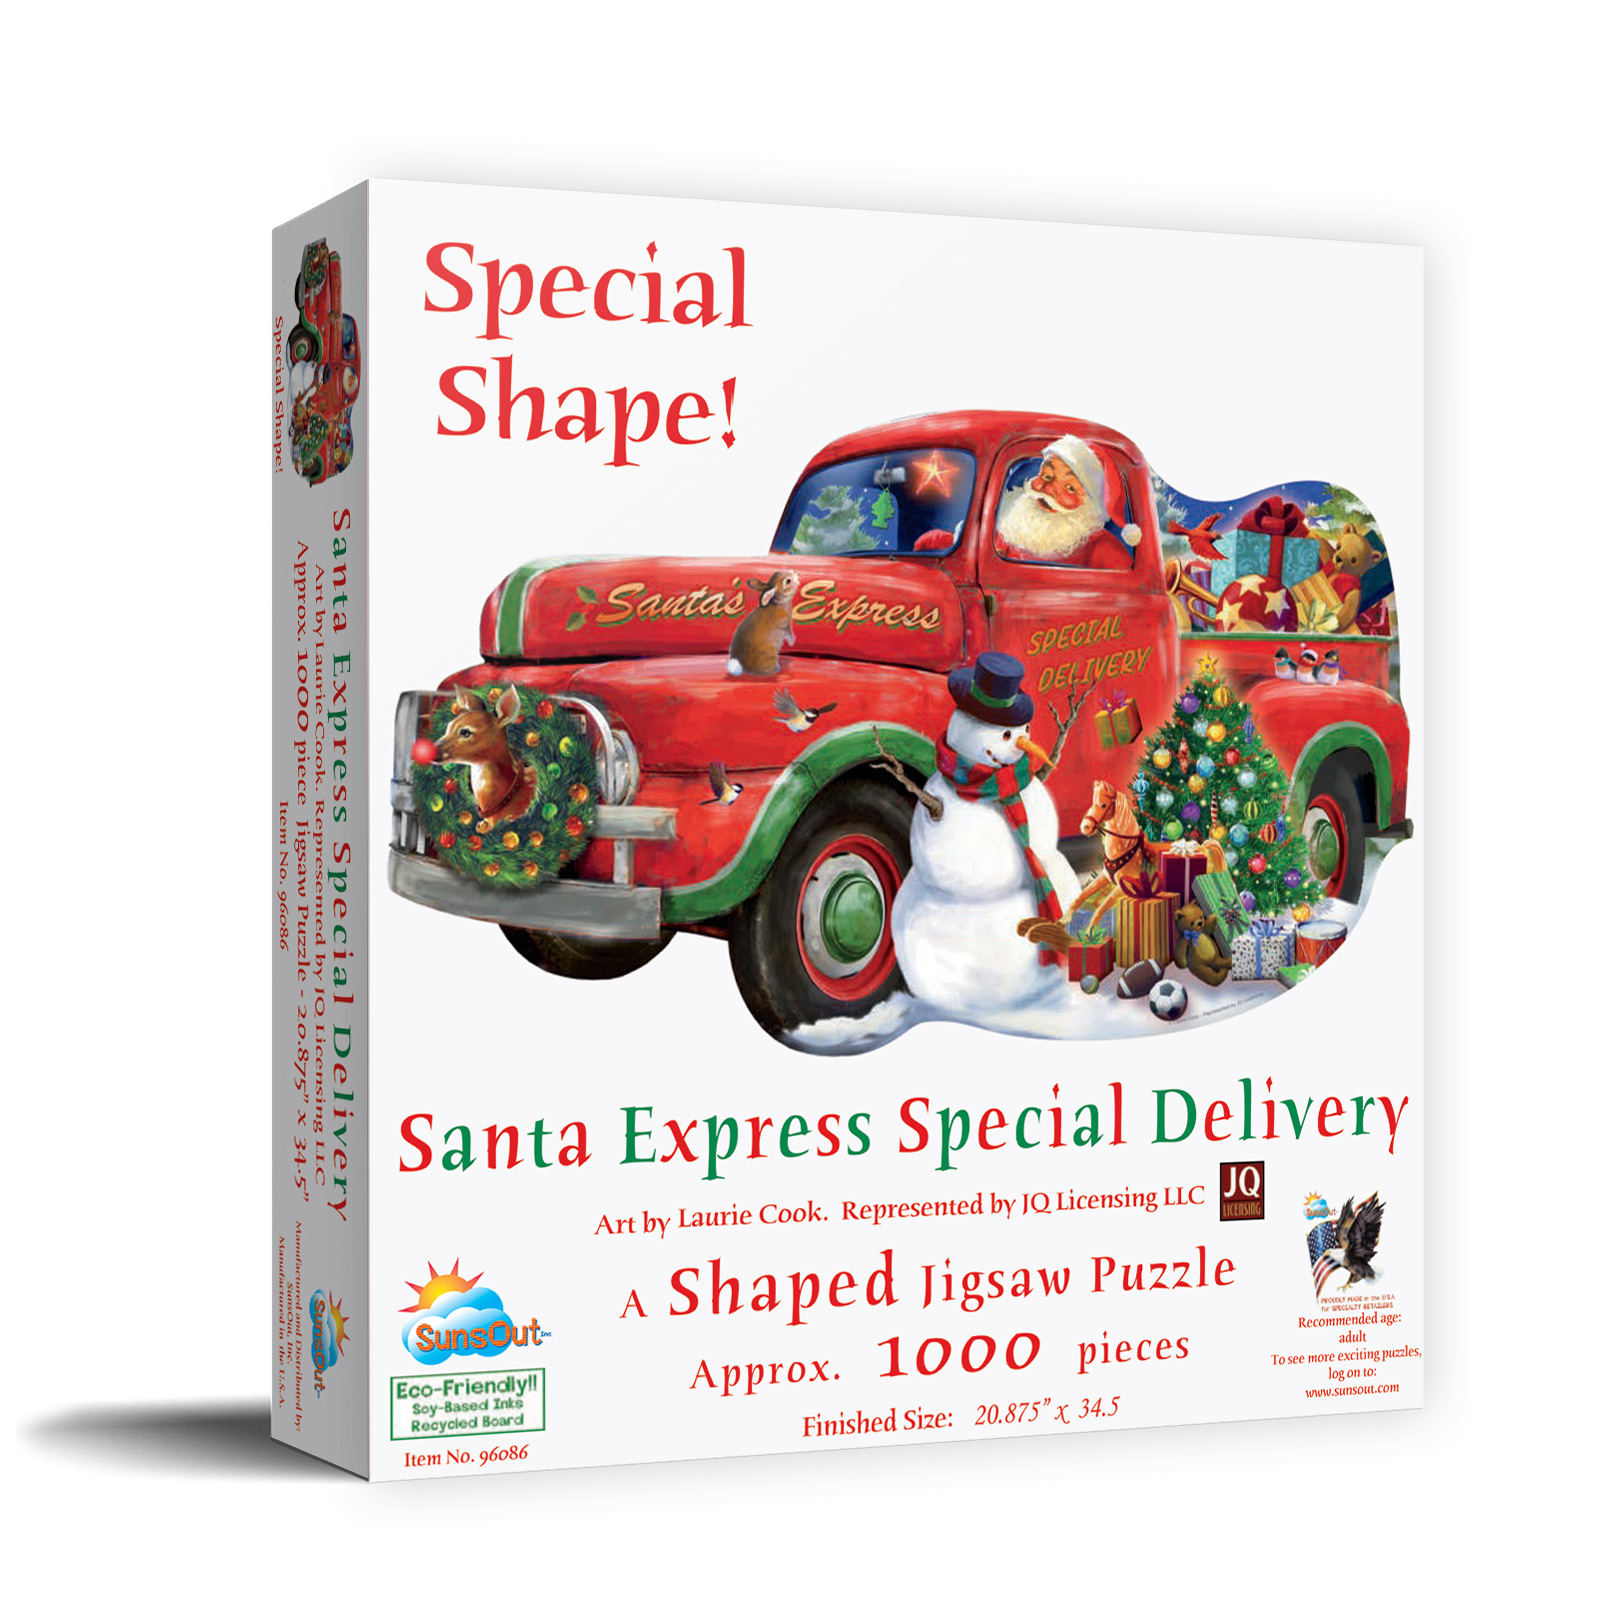 Santa Express Special Delivery